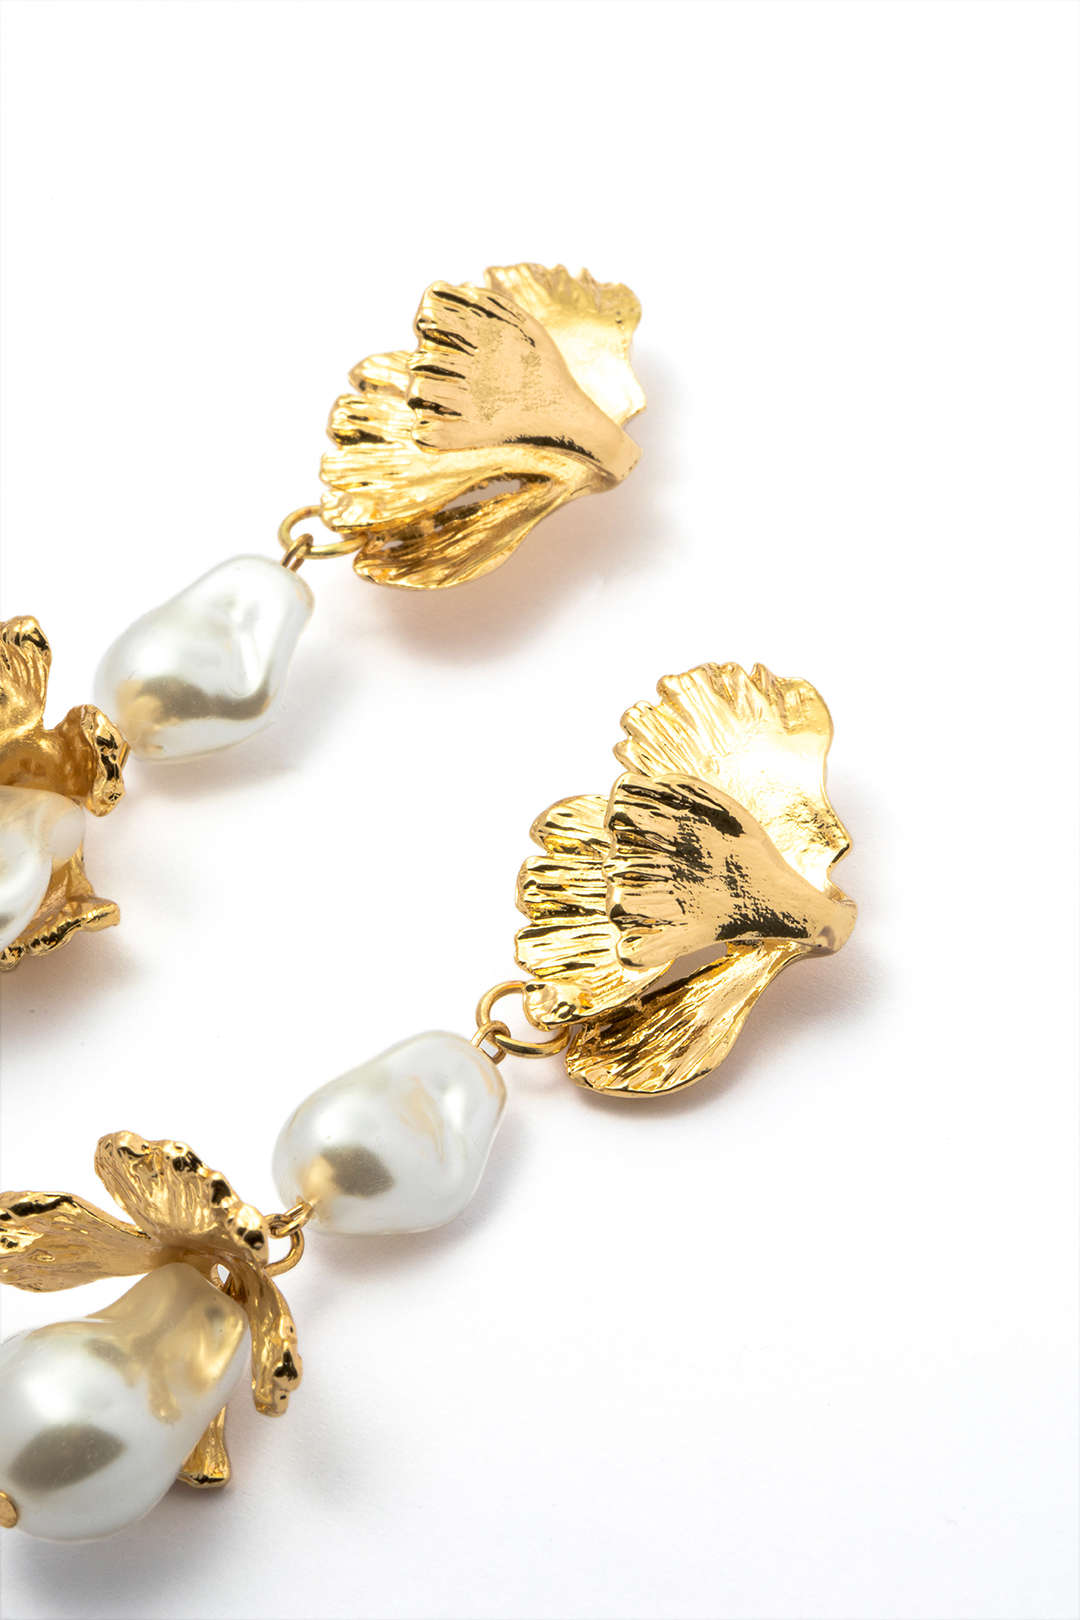 Flower & Pearl Drop Earrings